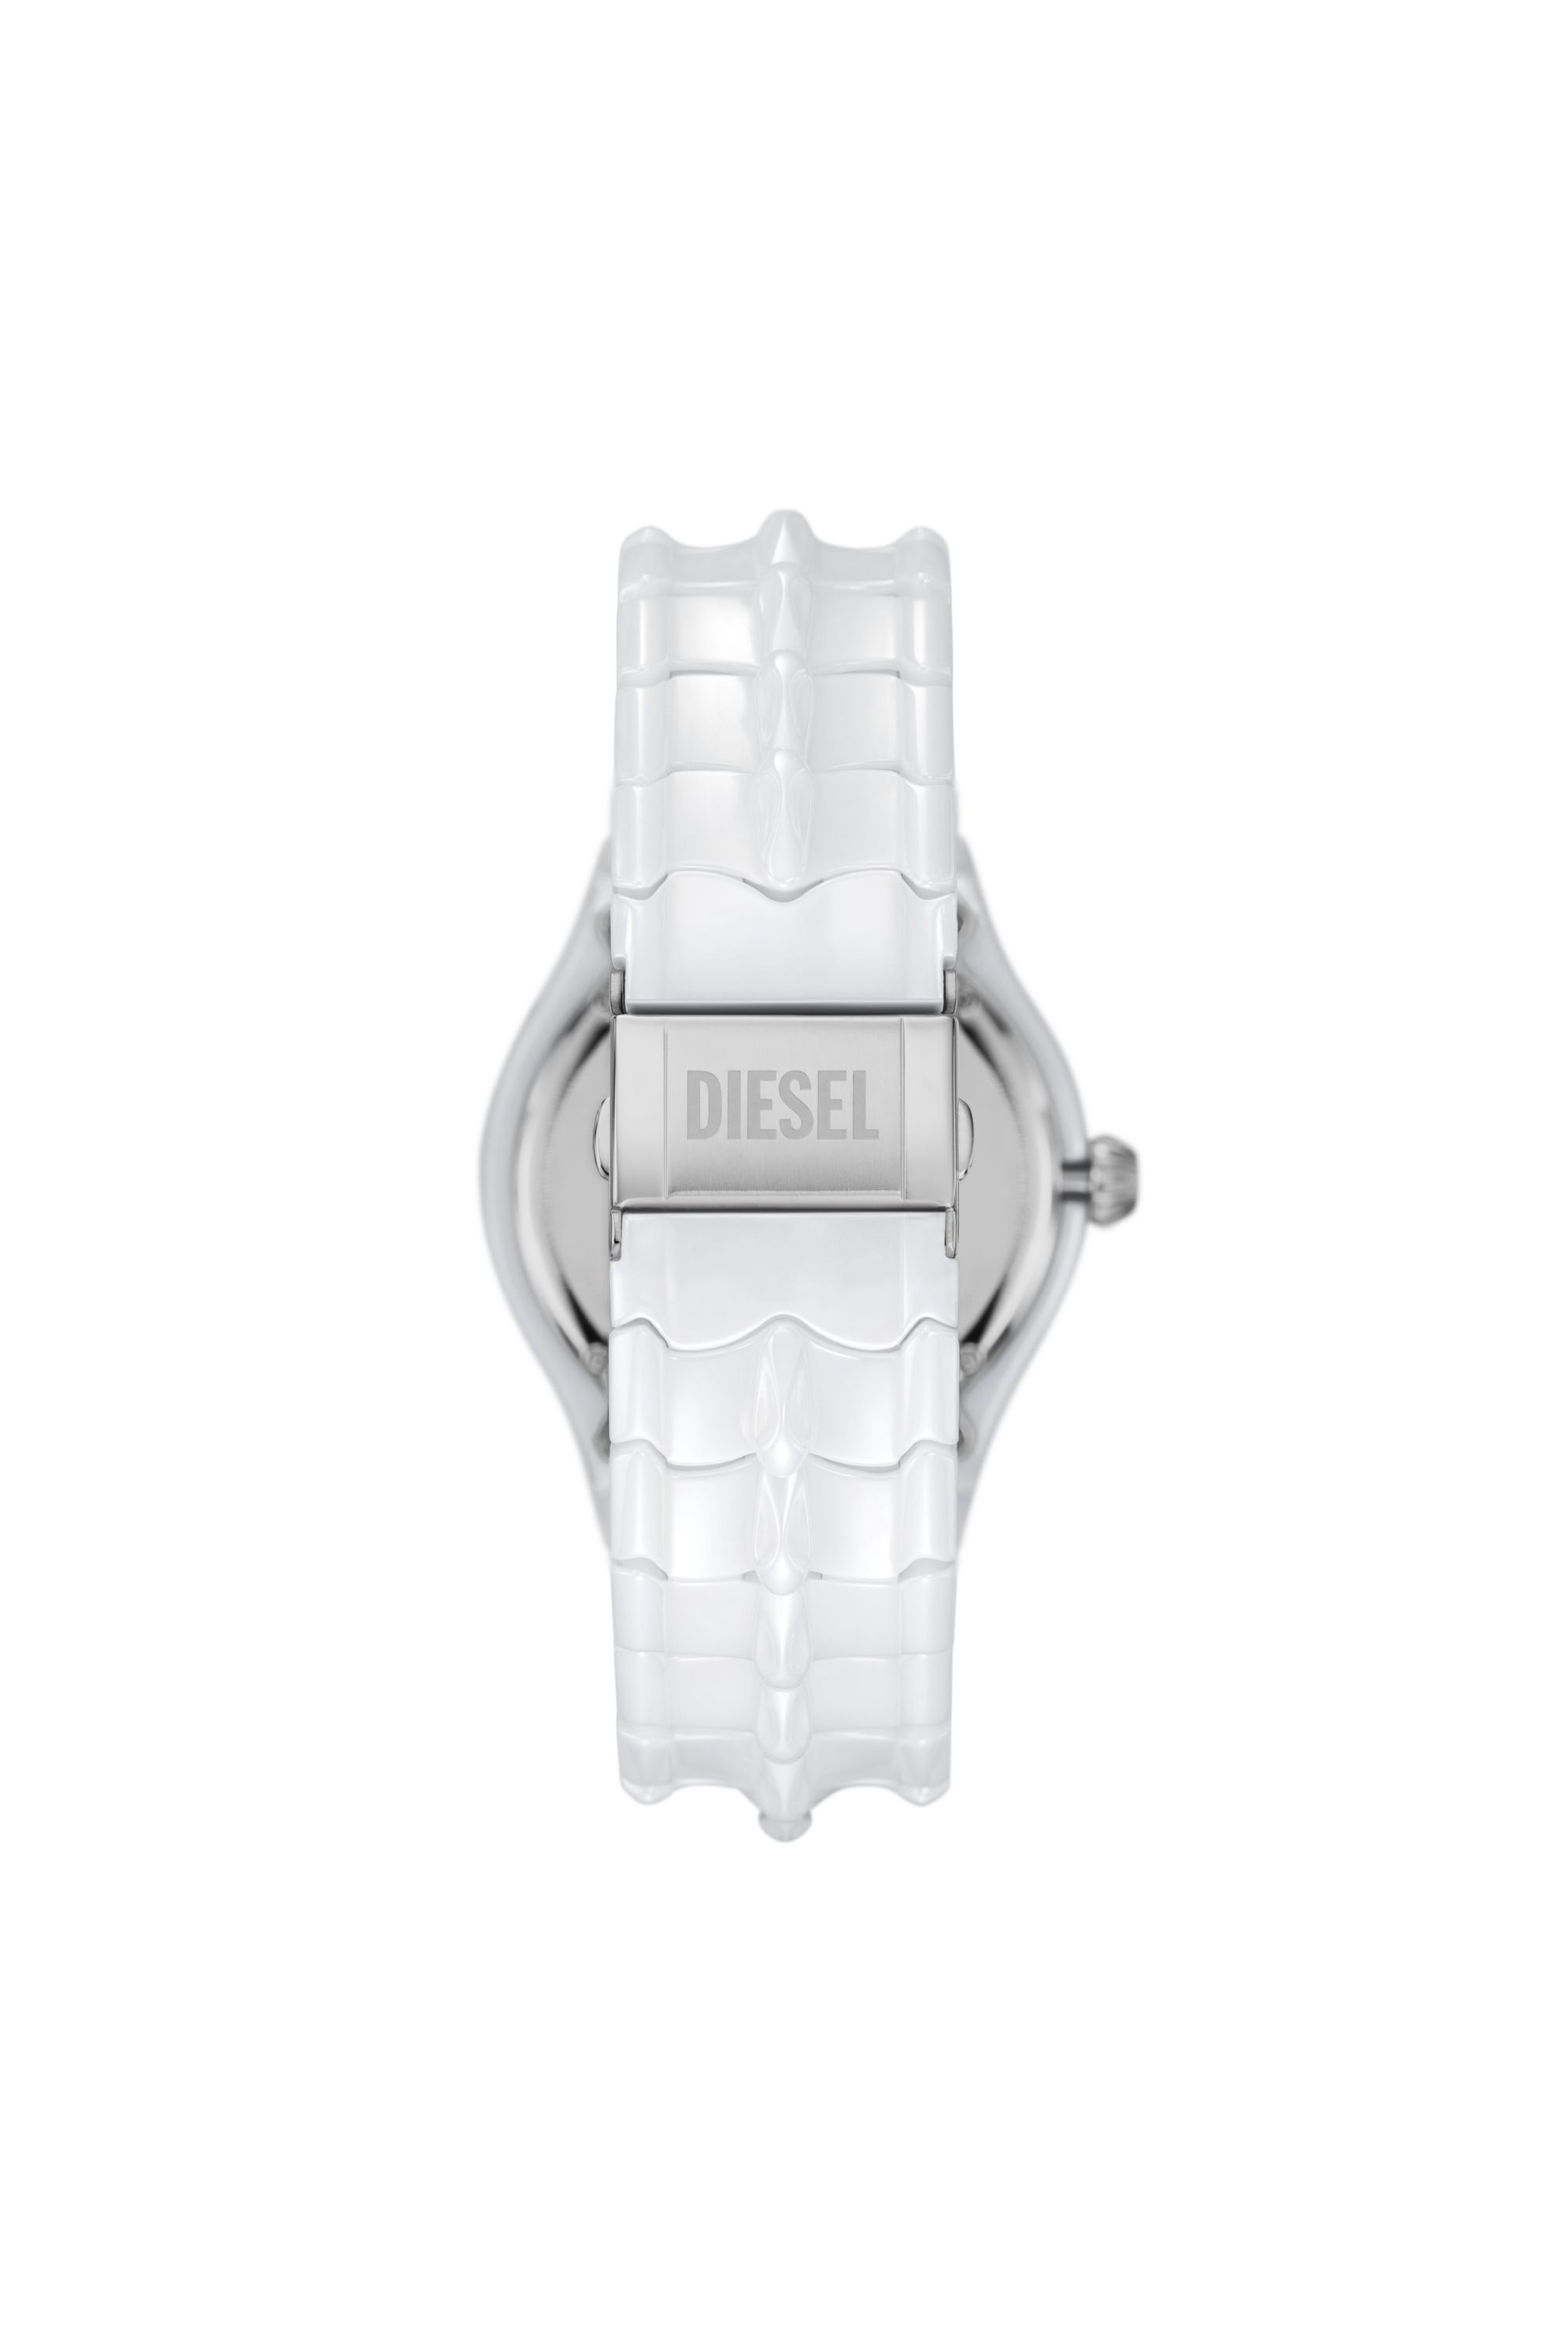 Diesel - DZ2197, White - Image 2